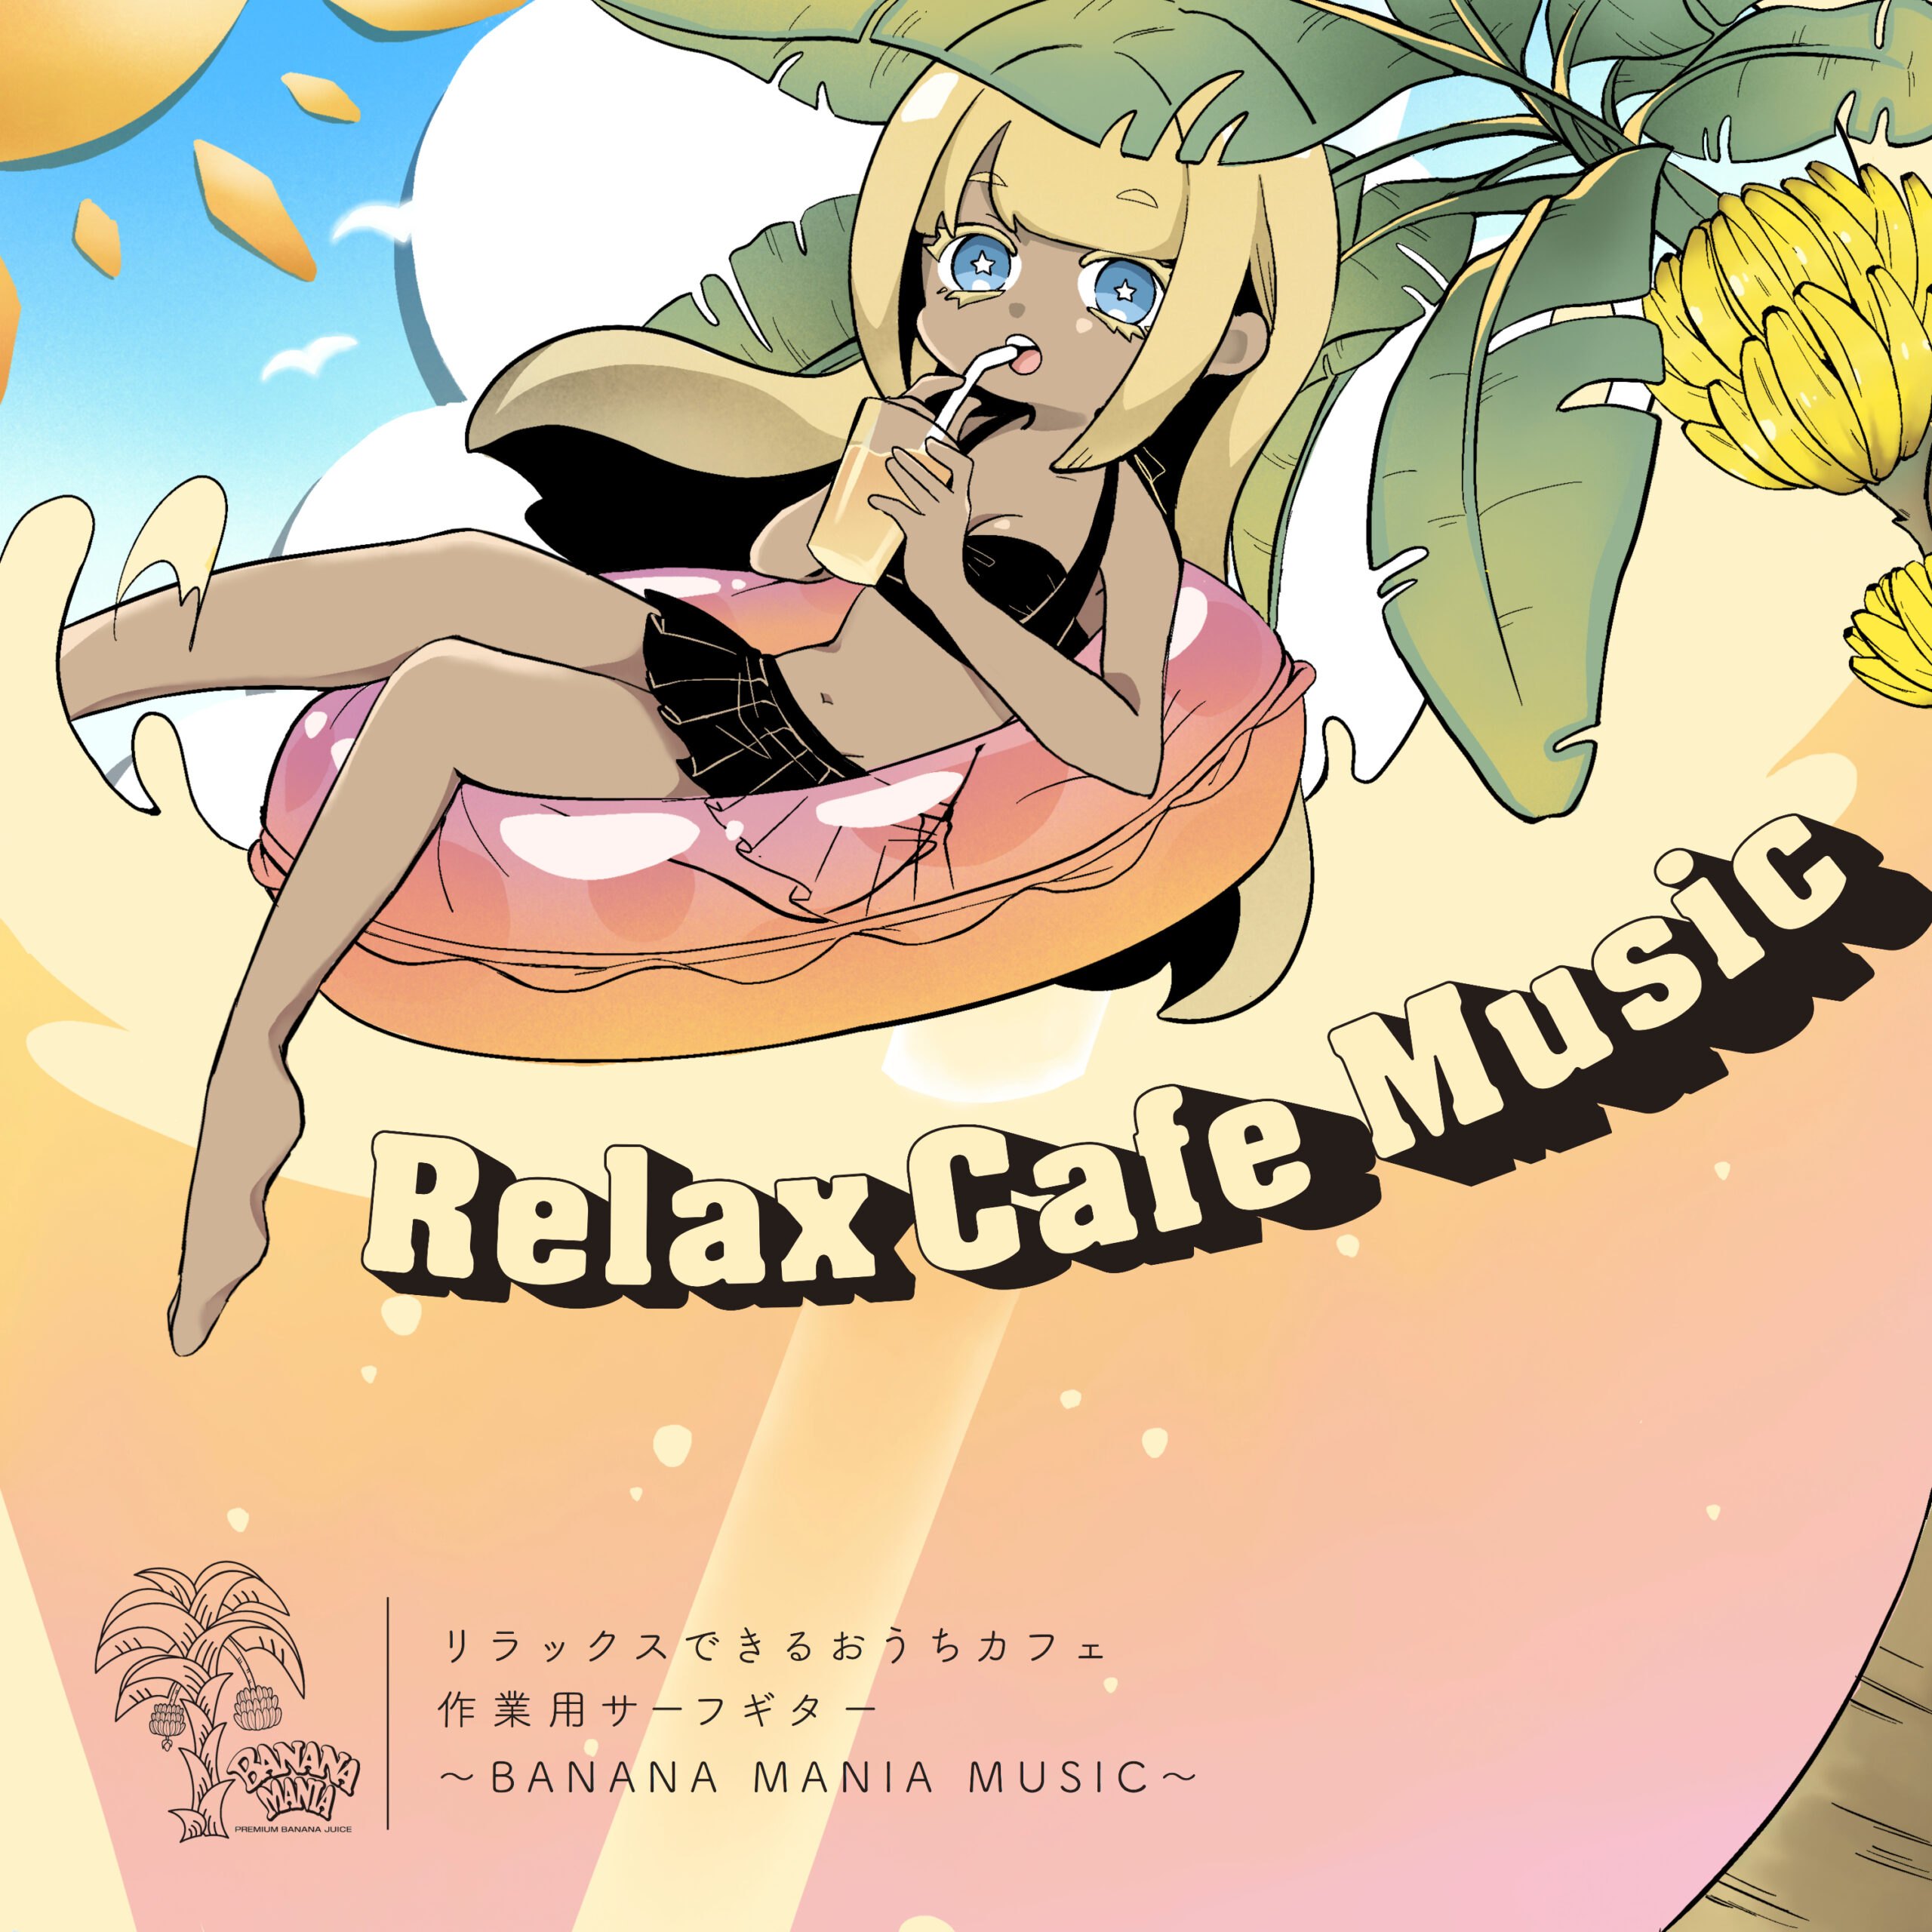 Relax Cafe Music リラックスできるおうちカフェ作業用サーフギター 〜BANANA MANIA Music〜